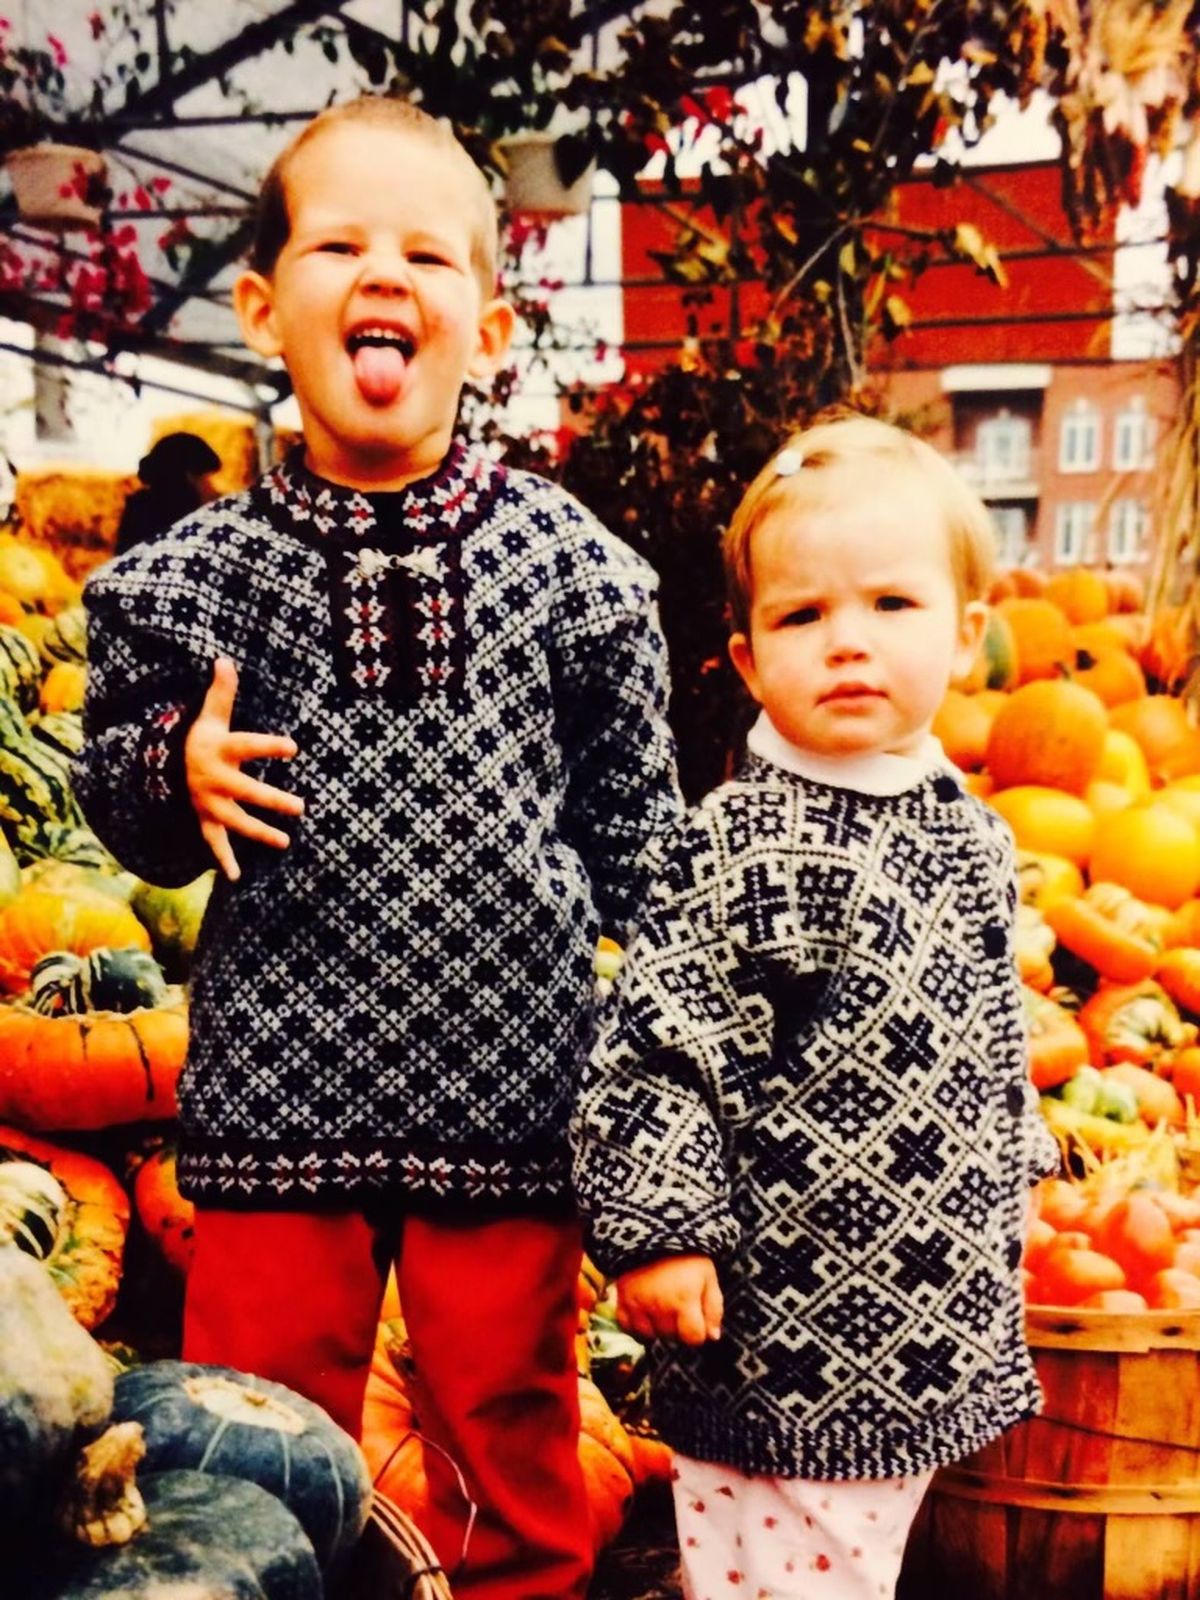 Väikesed jõmpsikad Keili ja Cedrik uhkelt Eesti traditsioonilisi kampsuneid kandmas. Paistab, et käis hoogne kõrvitsajaht halloween'i jaoks!